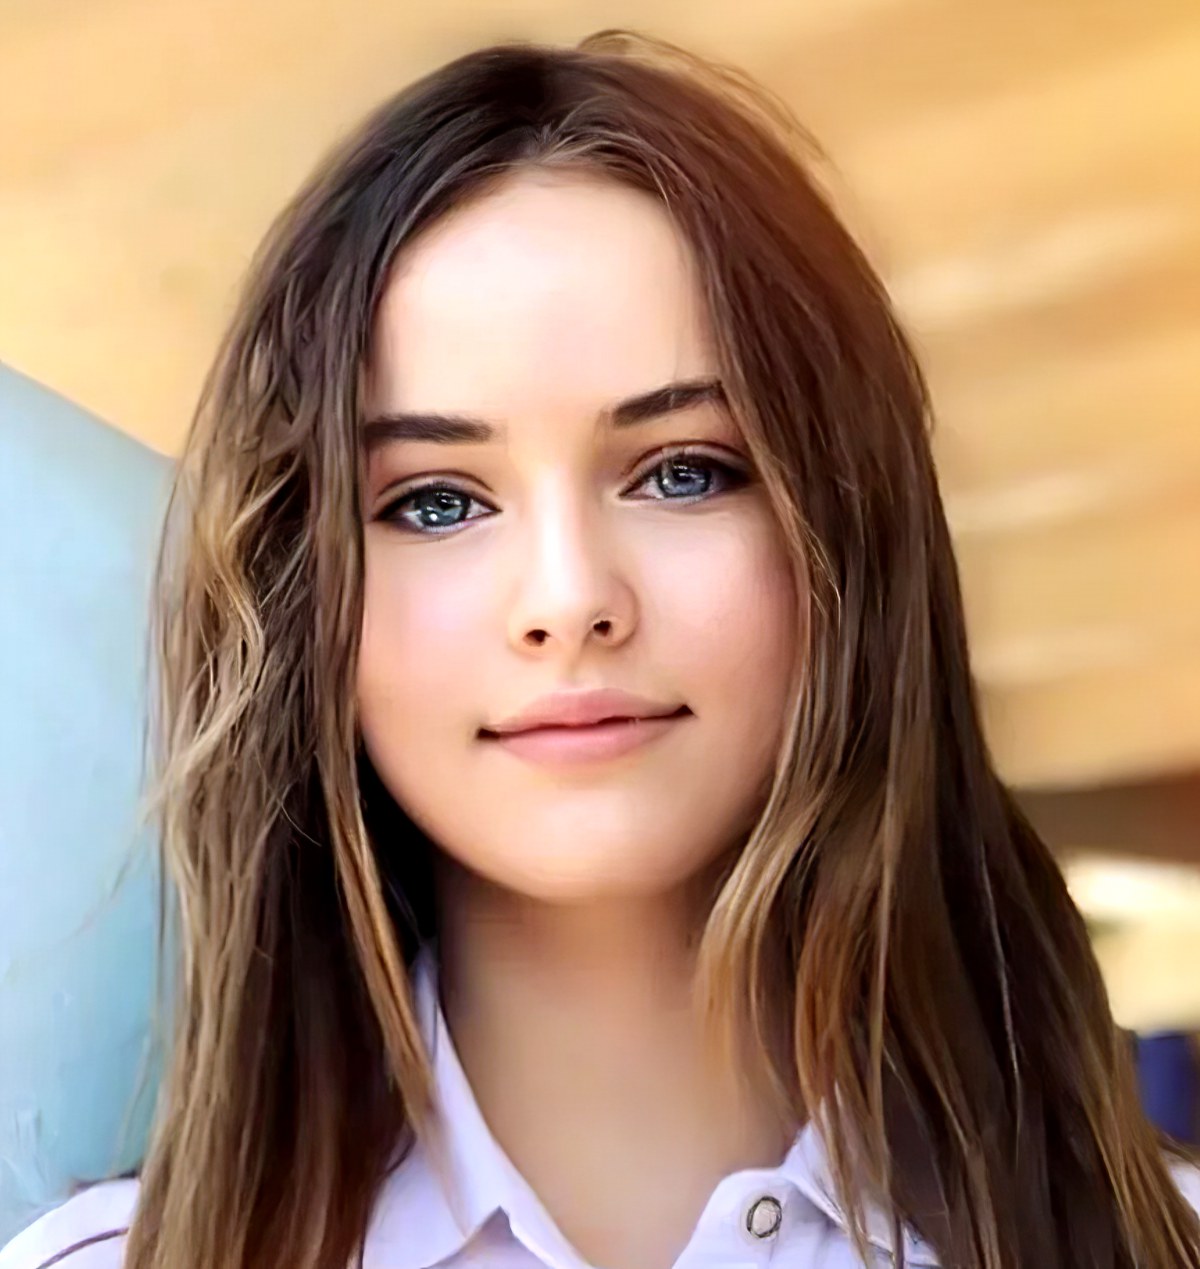 Красивая девушка лицо дома. Самые красивые девушки 14 лет. Красивое лицо девочки. Красивые лица девочек 10 лет.